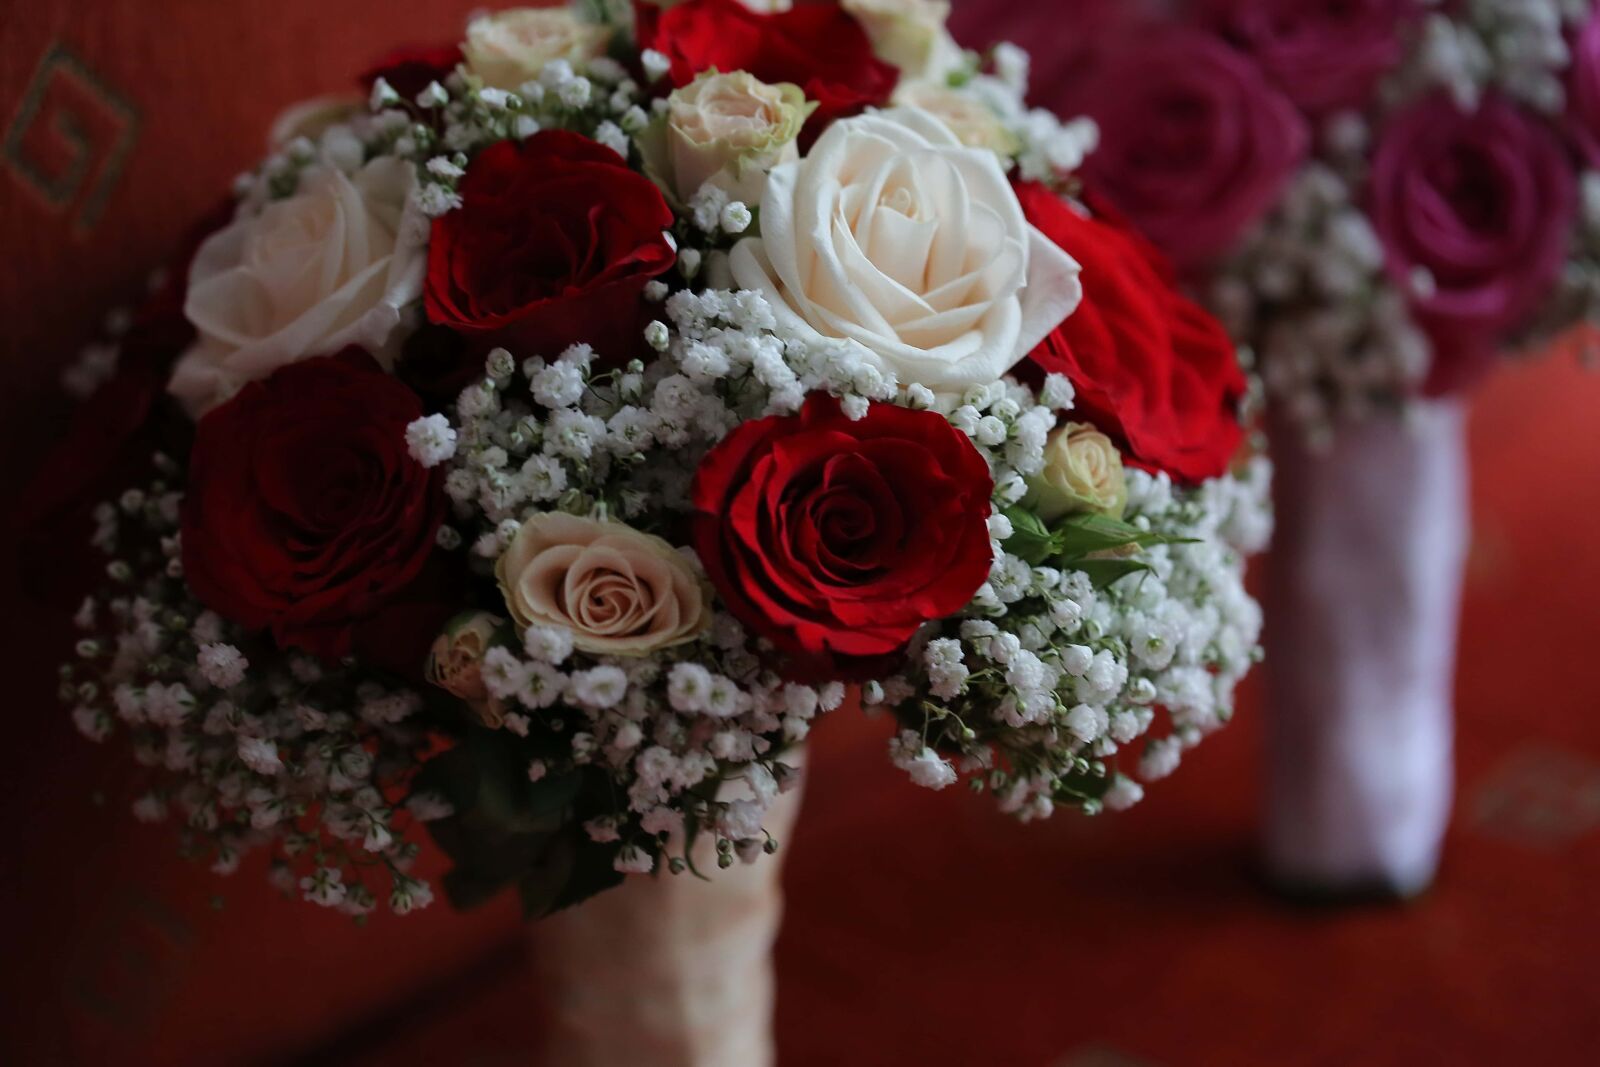 Canon EF 100mm F2.8 Macro USM sample photo. Wedding bouquet, bouquet, arrangement photography